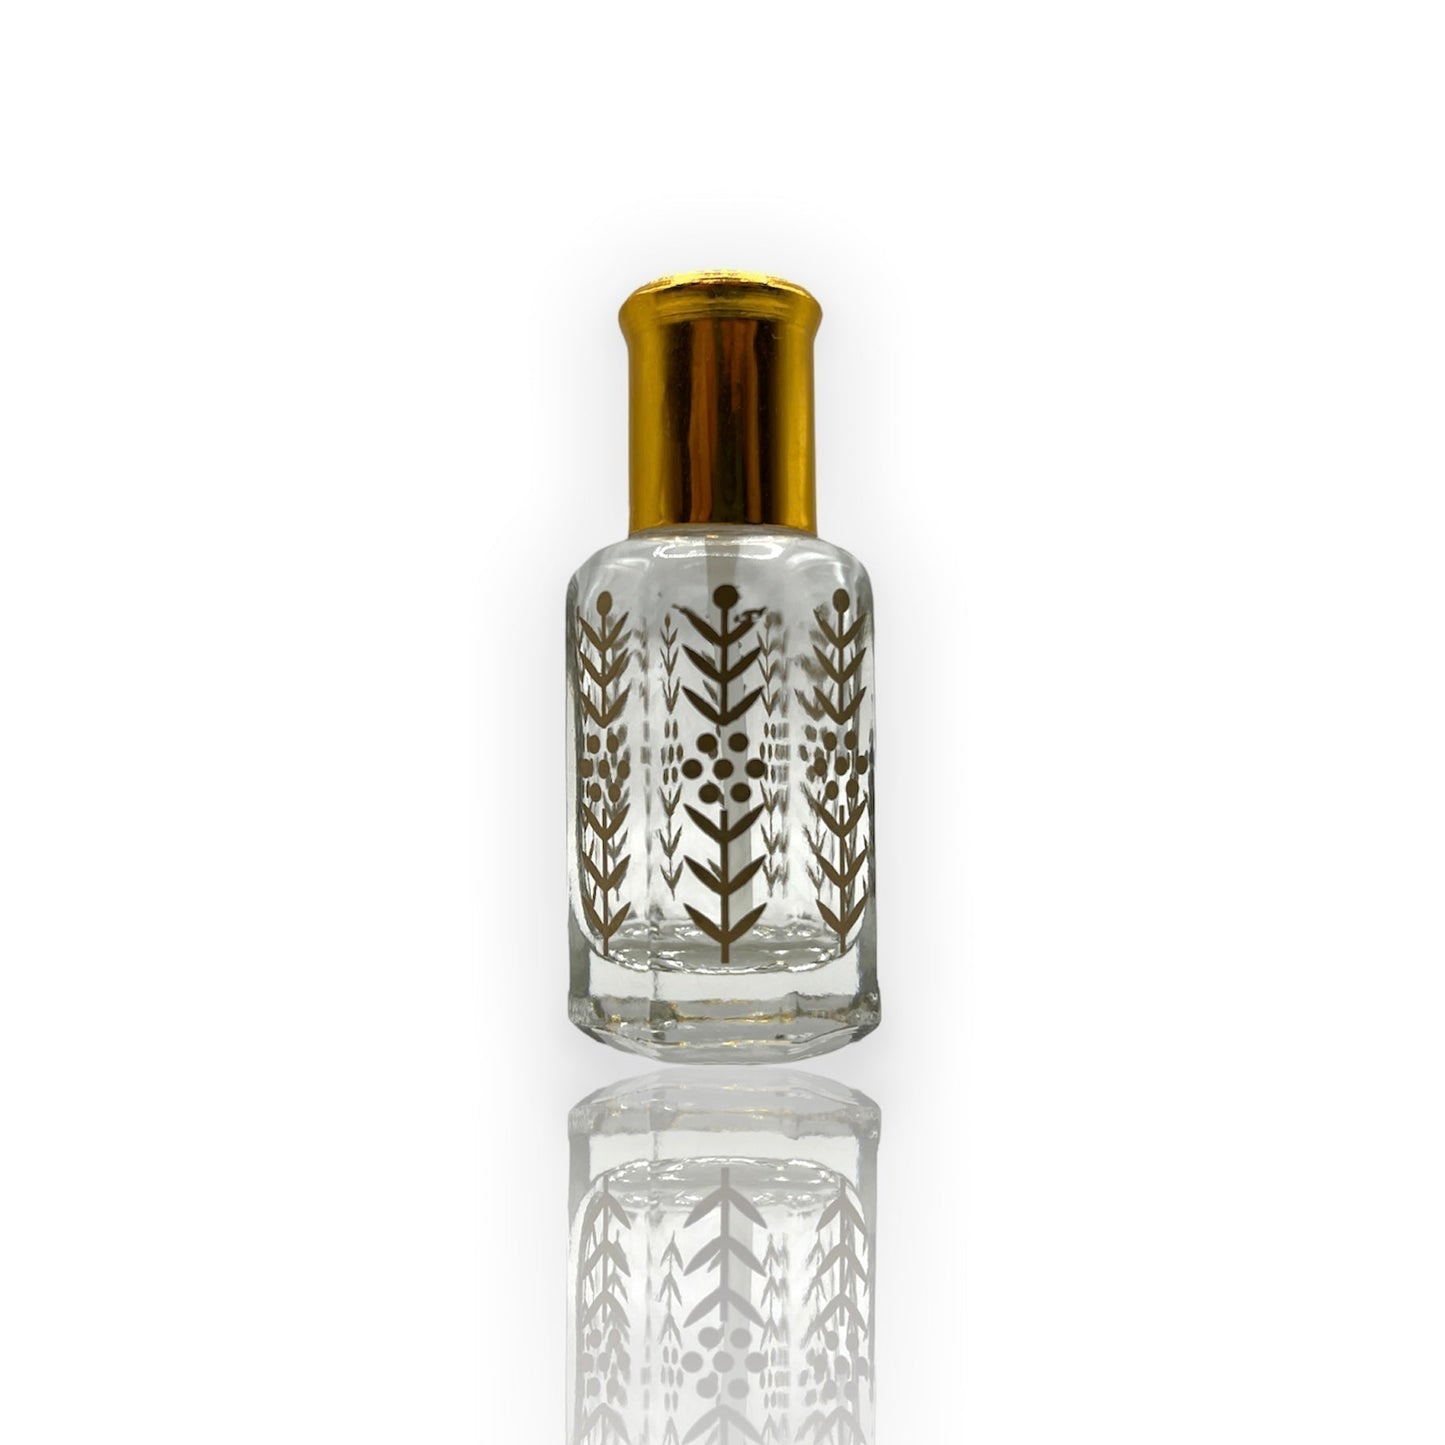 O-09 Oil Perfume *Inspired by Lail Maleki